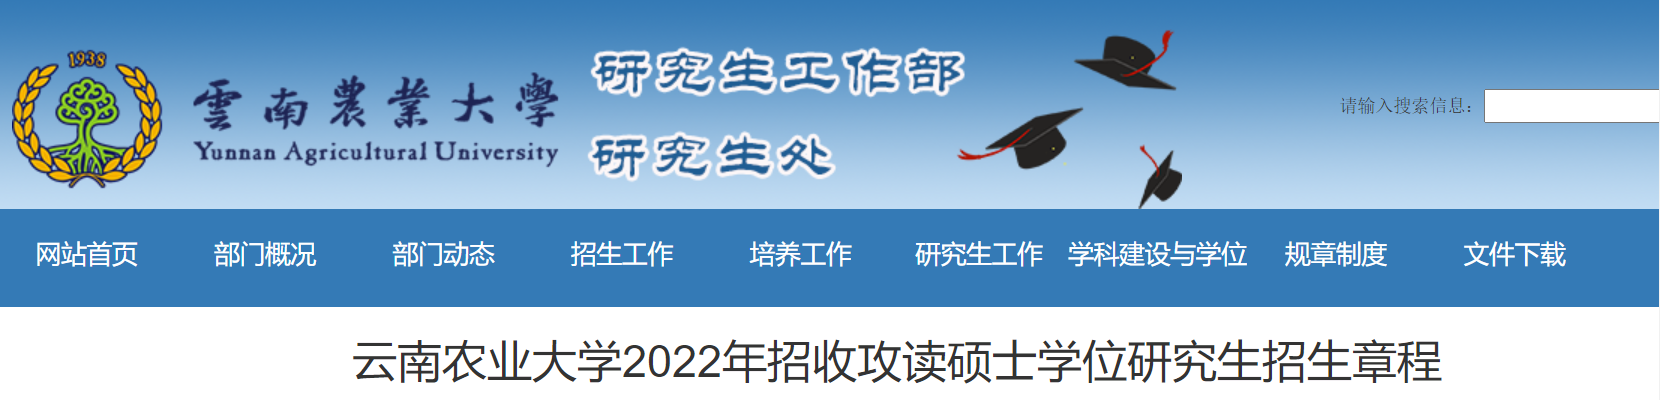 云南农业大学2022年招收攻读硕士学位研究生招生章程.png